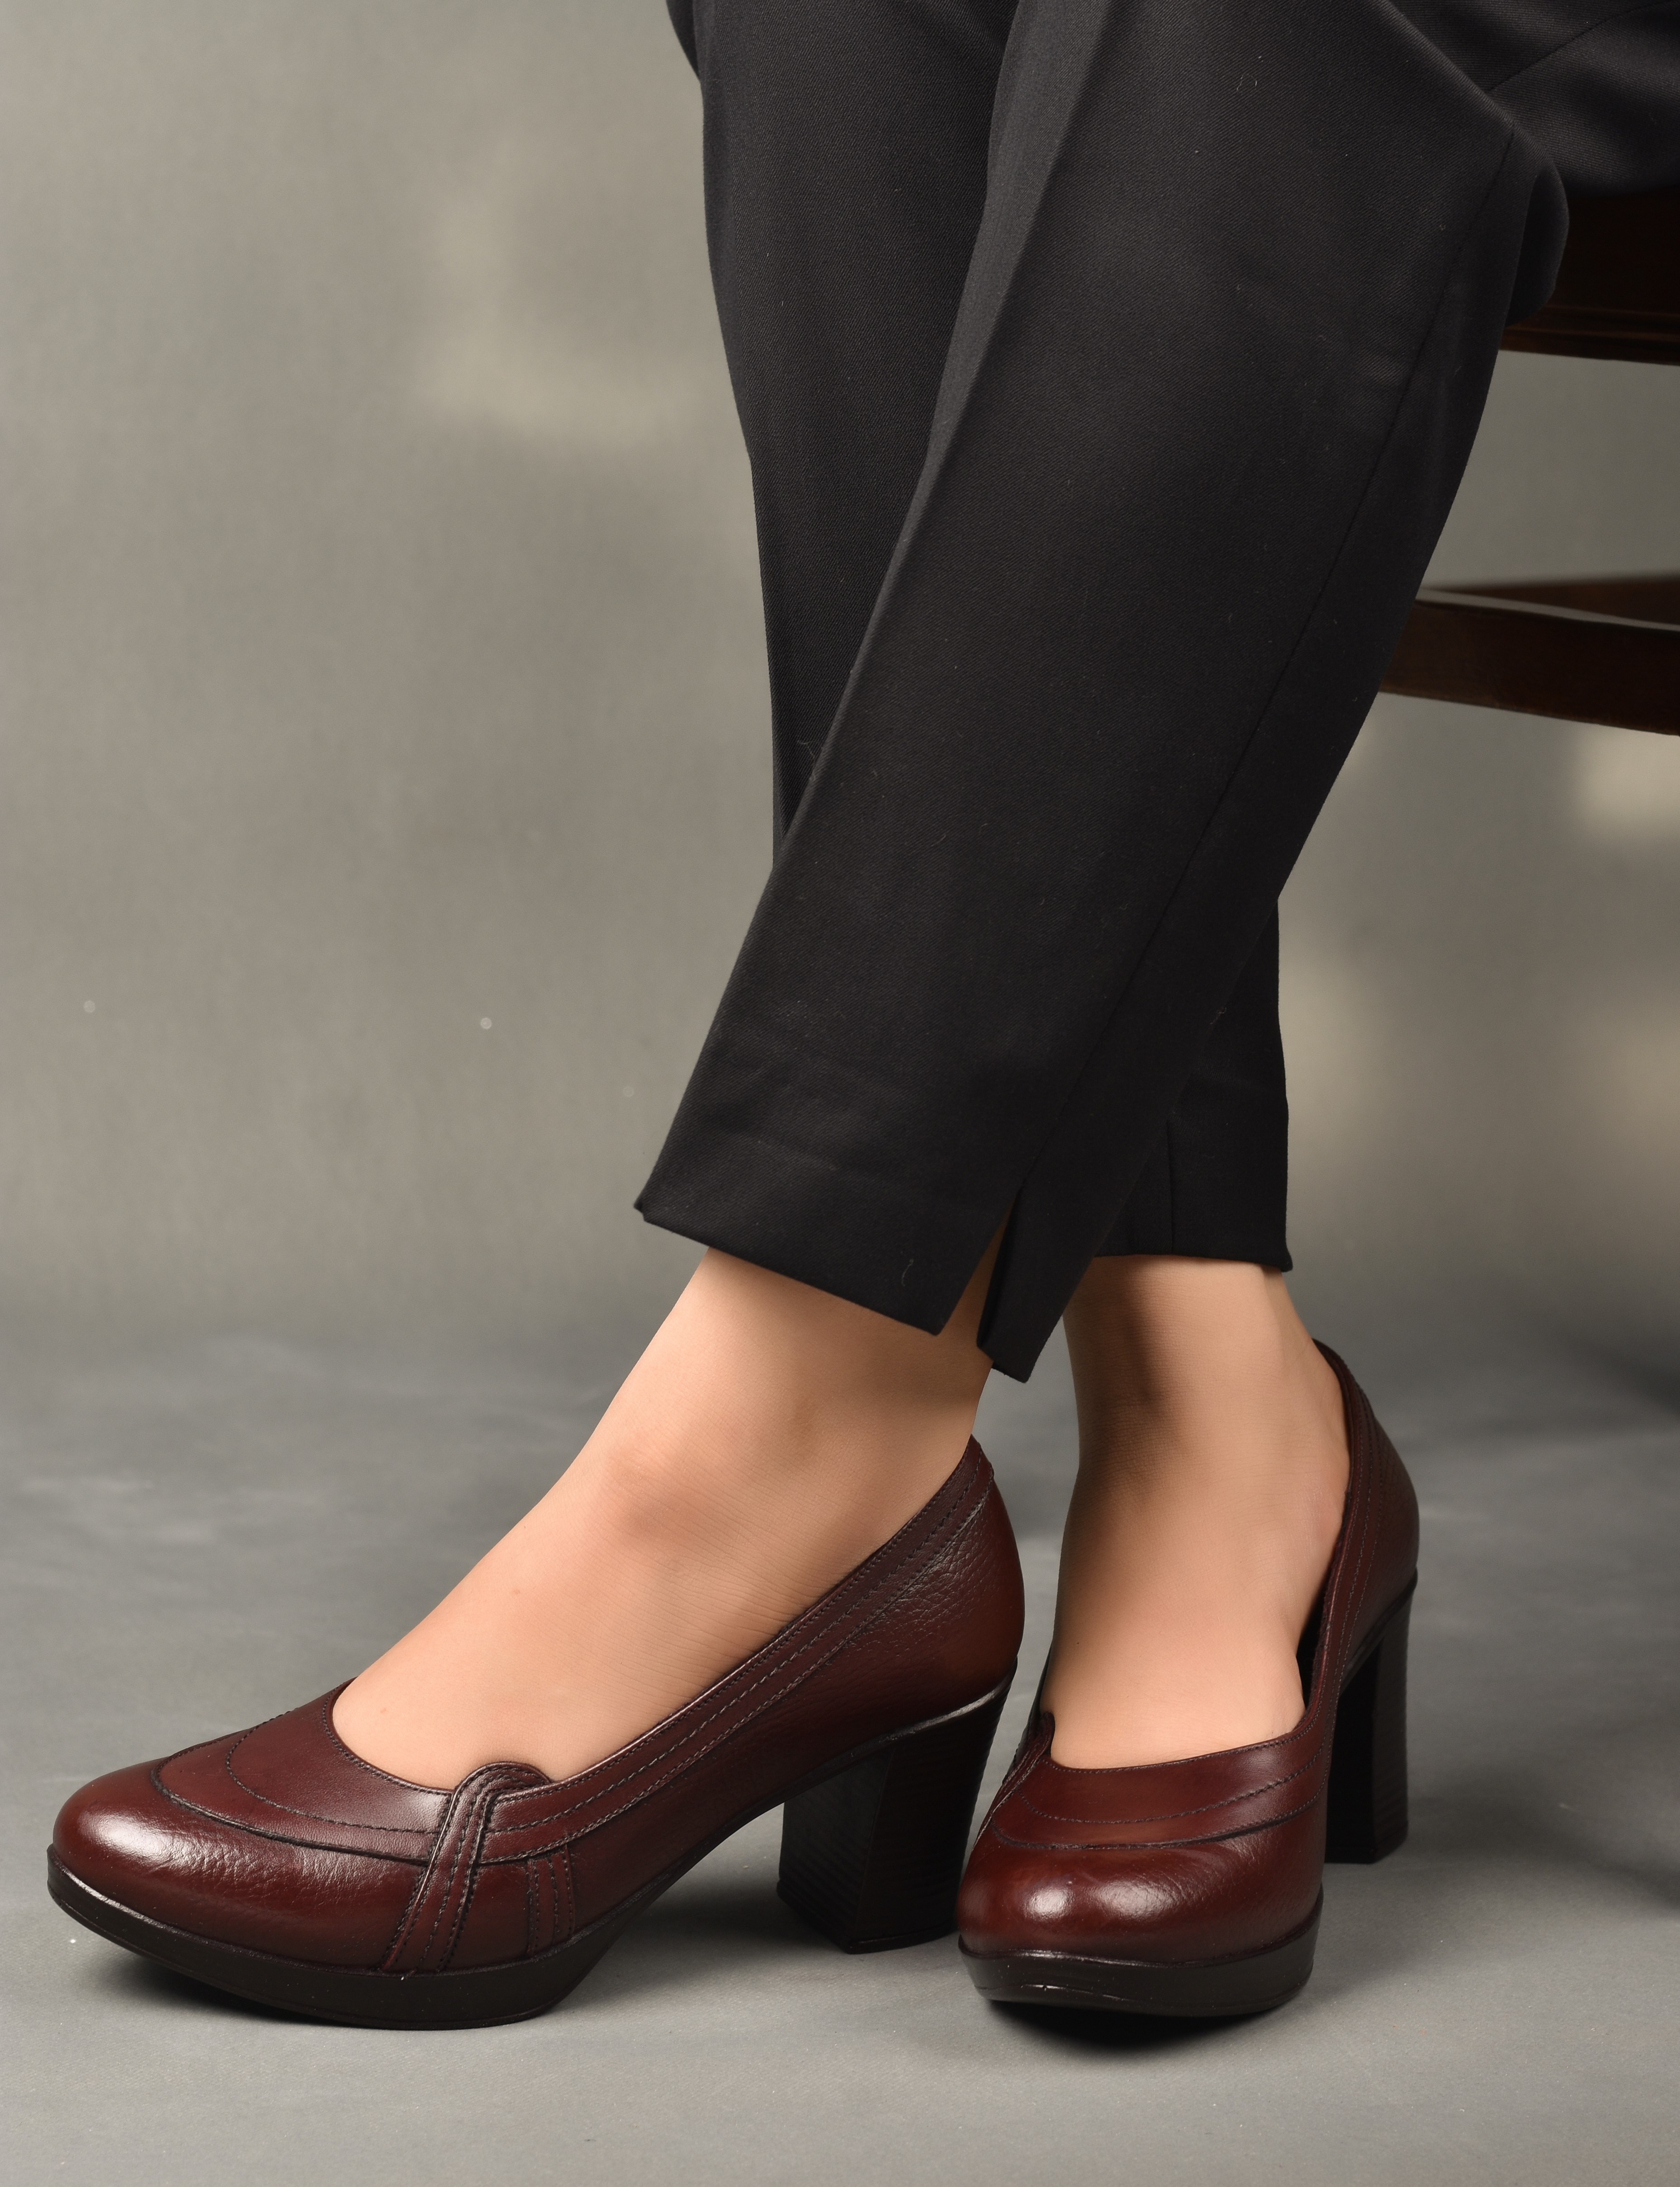 خرید آنلاین کفش چرمی پاشنه بلند زنانه روشن مدل 22-7060